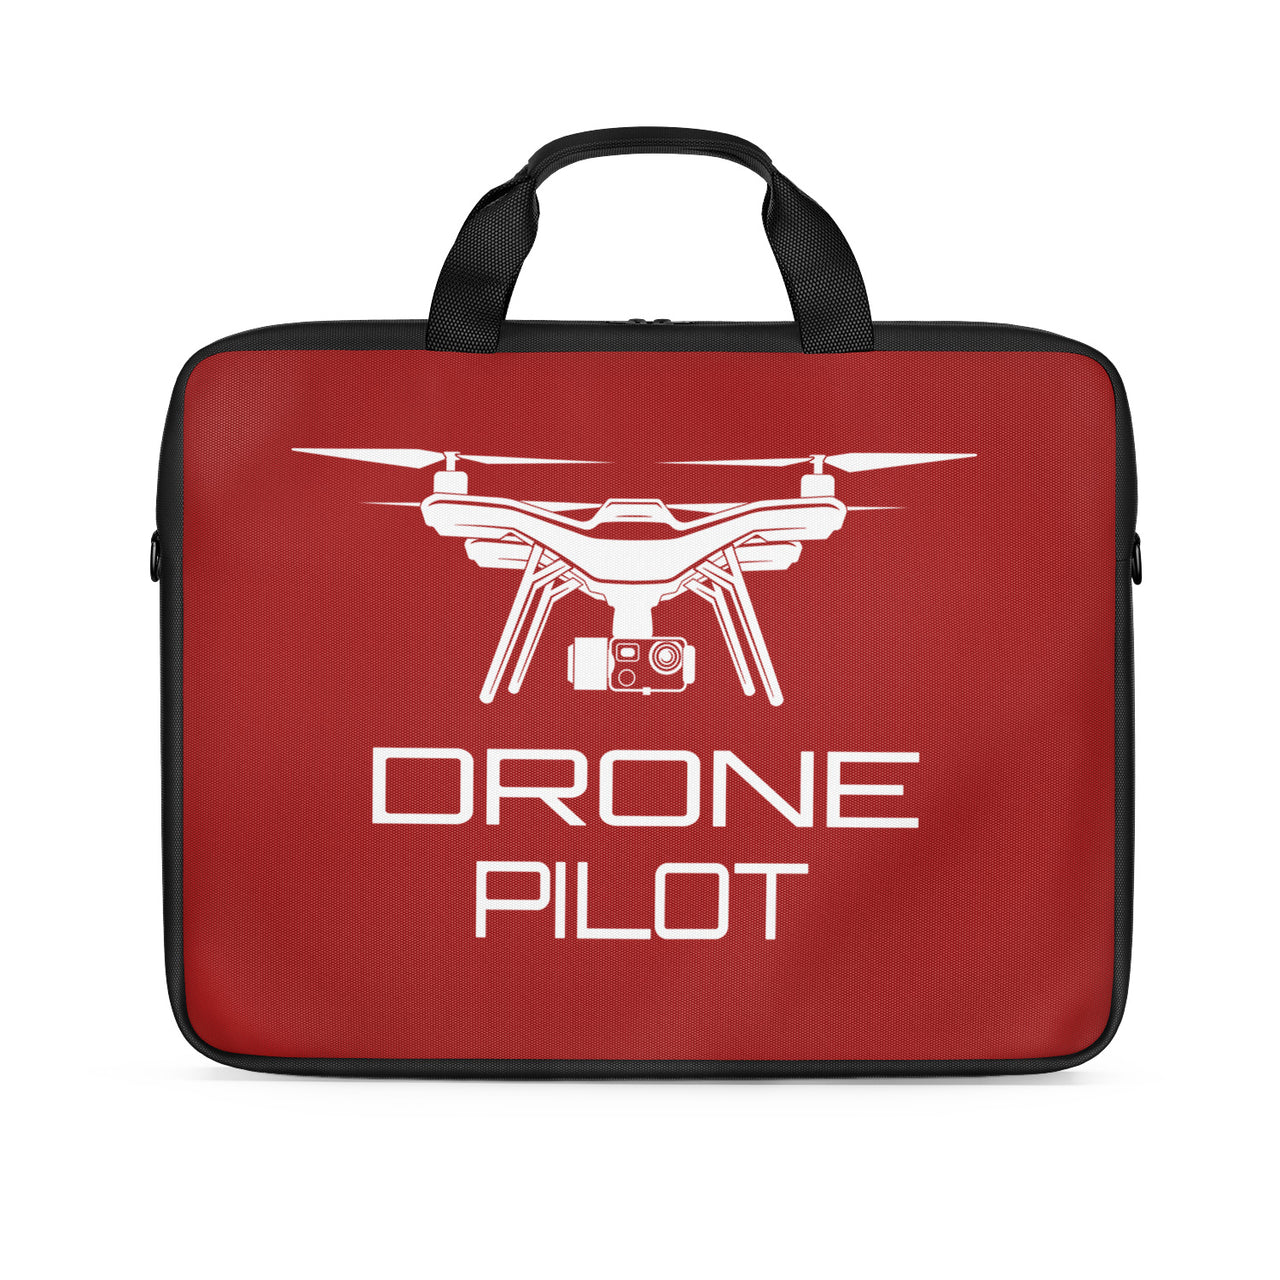 Drone Pilot Designed Laptop & Tablet Bags